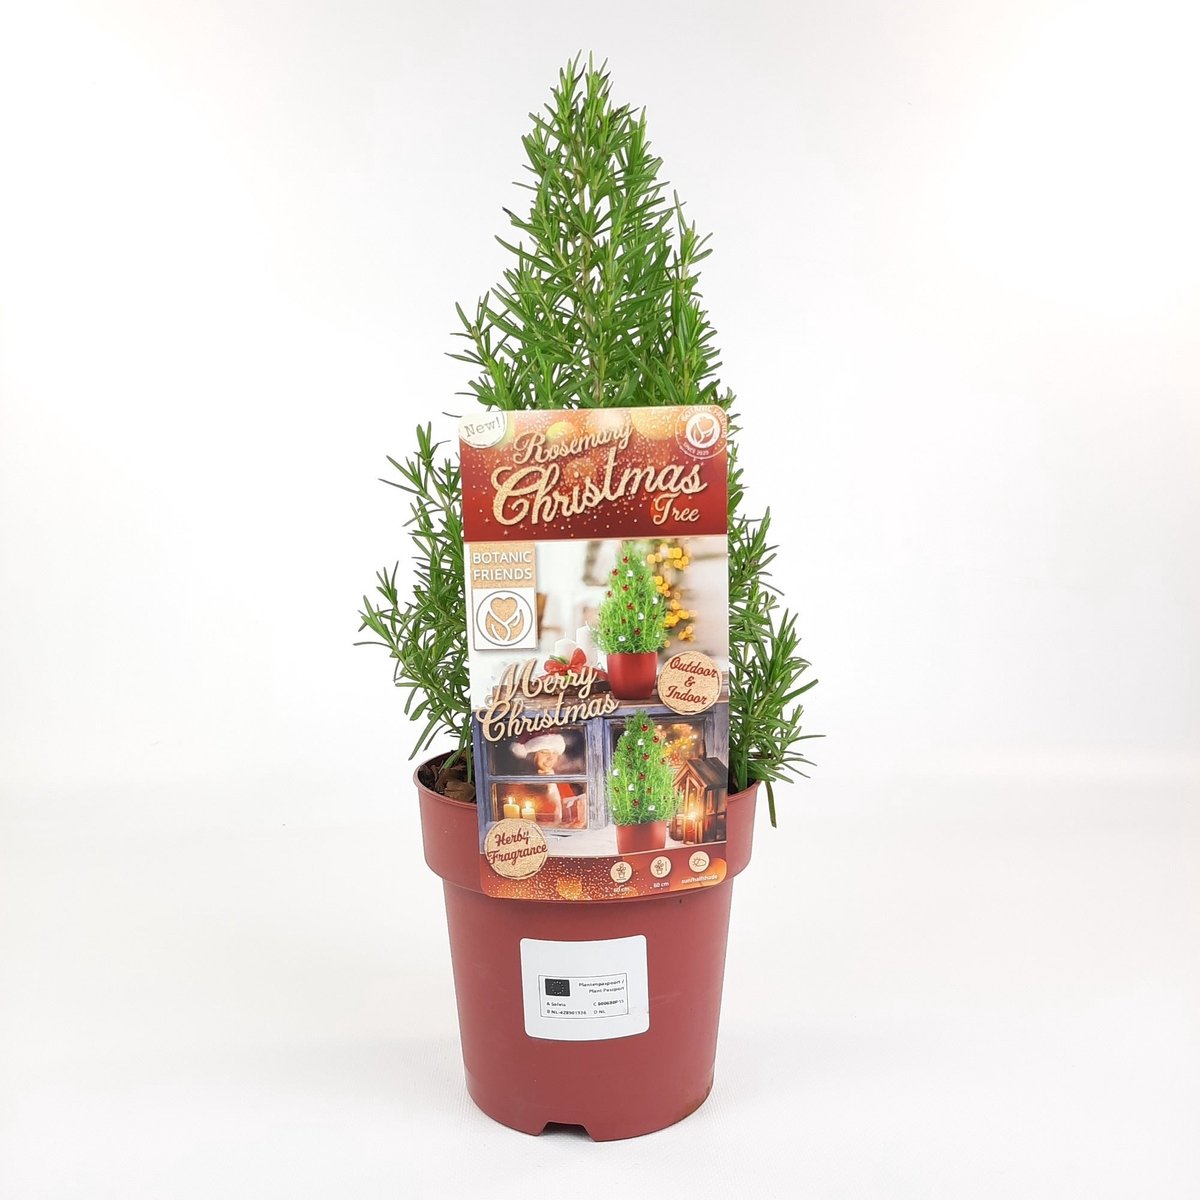 2x Rosmarinus Christmas Tree - Geurende Rozemarijn kerstboom in 15cm potten met hoogte 30-40cm